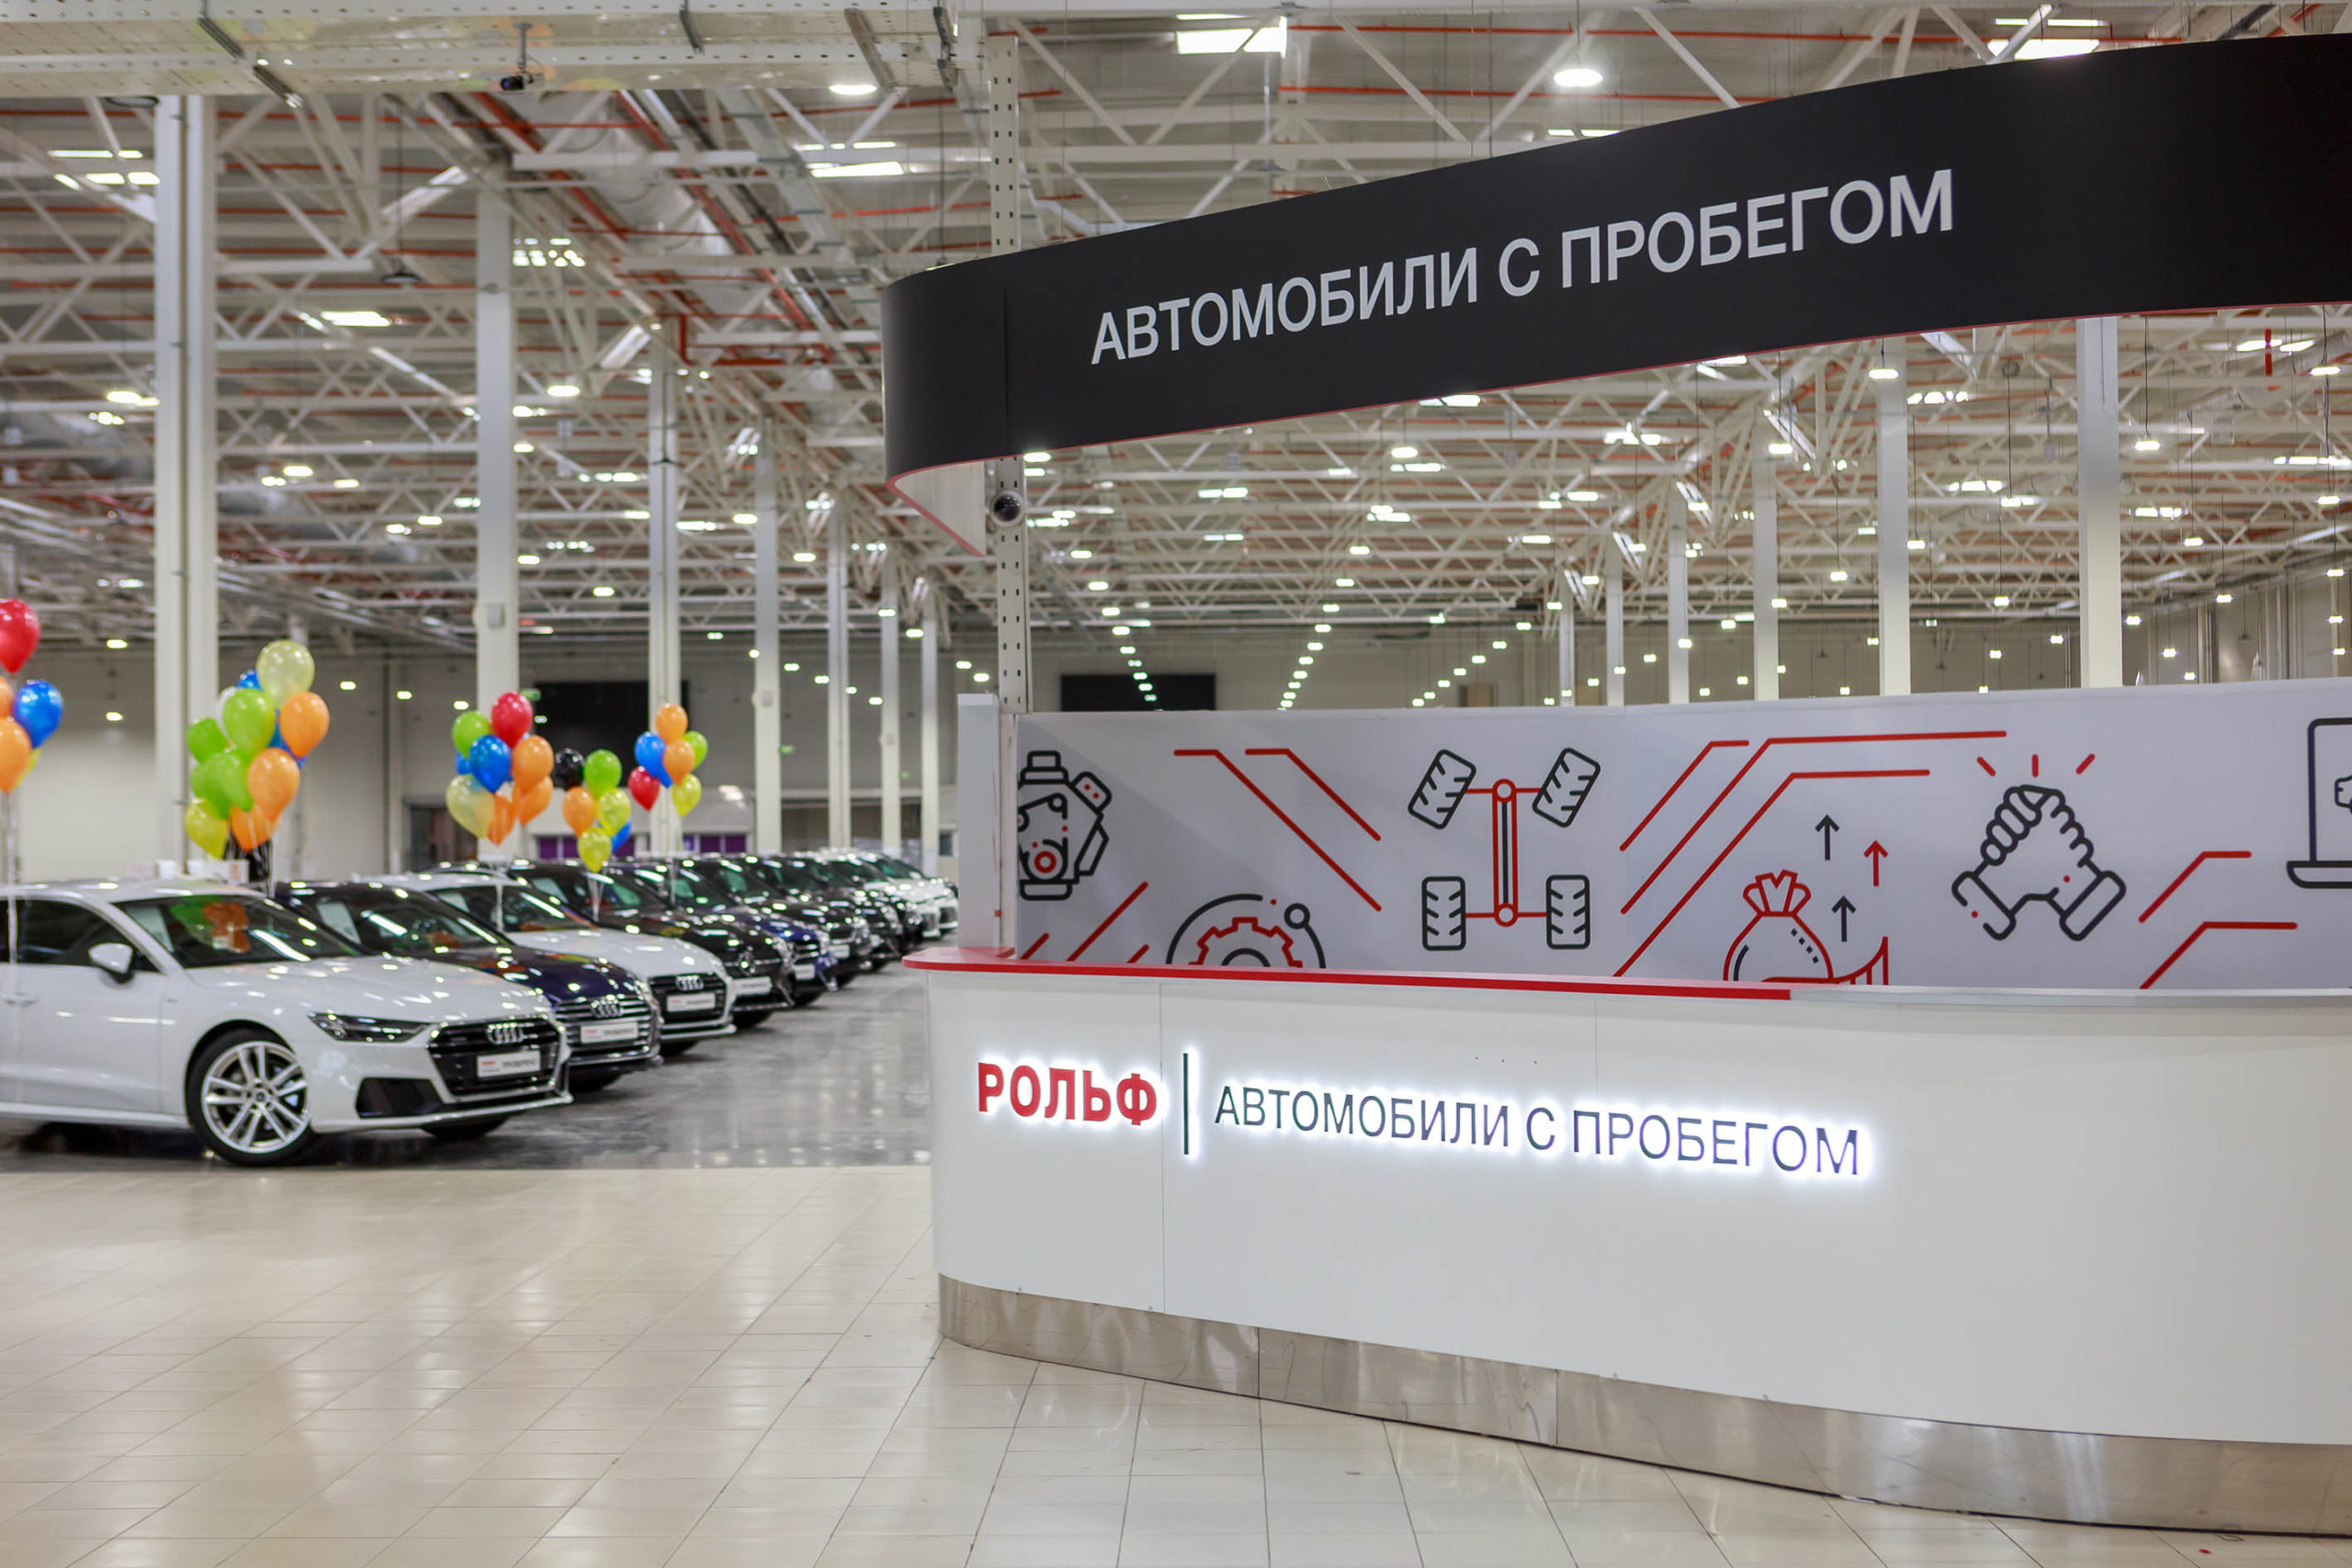 Автомобильный холдинг РОЛЬФ открыл мегамолл авто с пробегом в Санкт-Петербурге